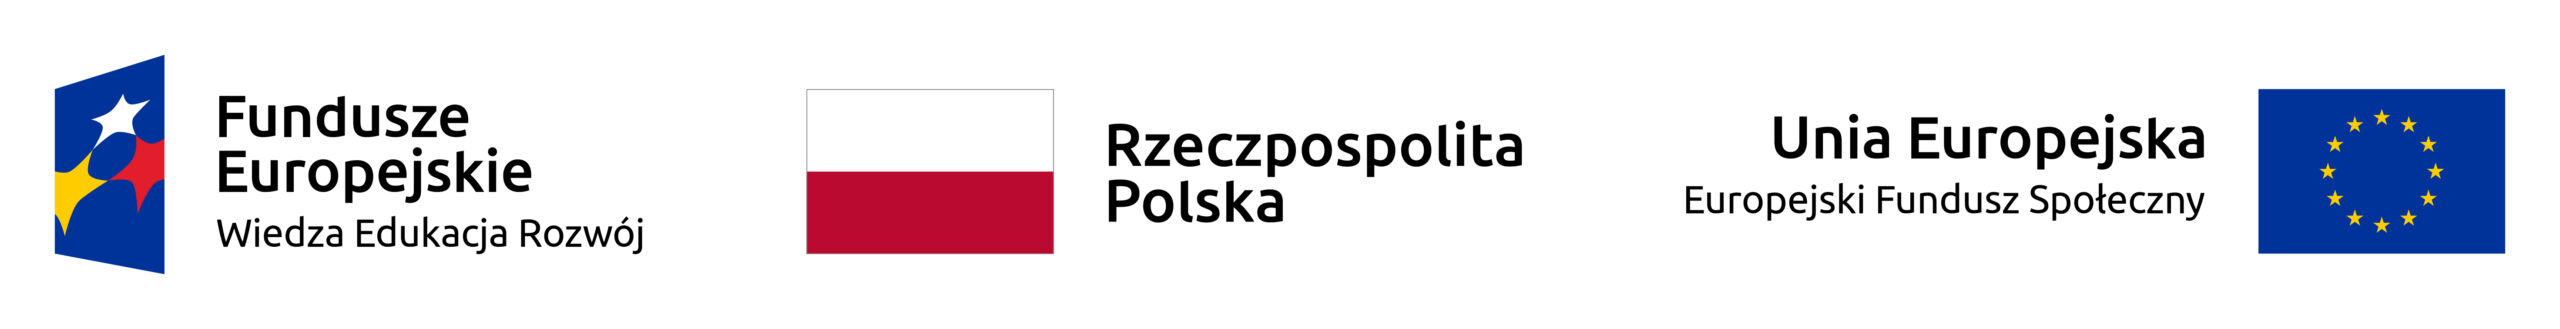 Logo Funduszy Europejskich - Wiedza Edukacja Rozwój, flaga Polski, logo Unii Europejskiej - Europejskiego Funduszu Społecznego